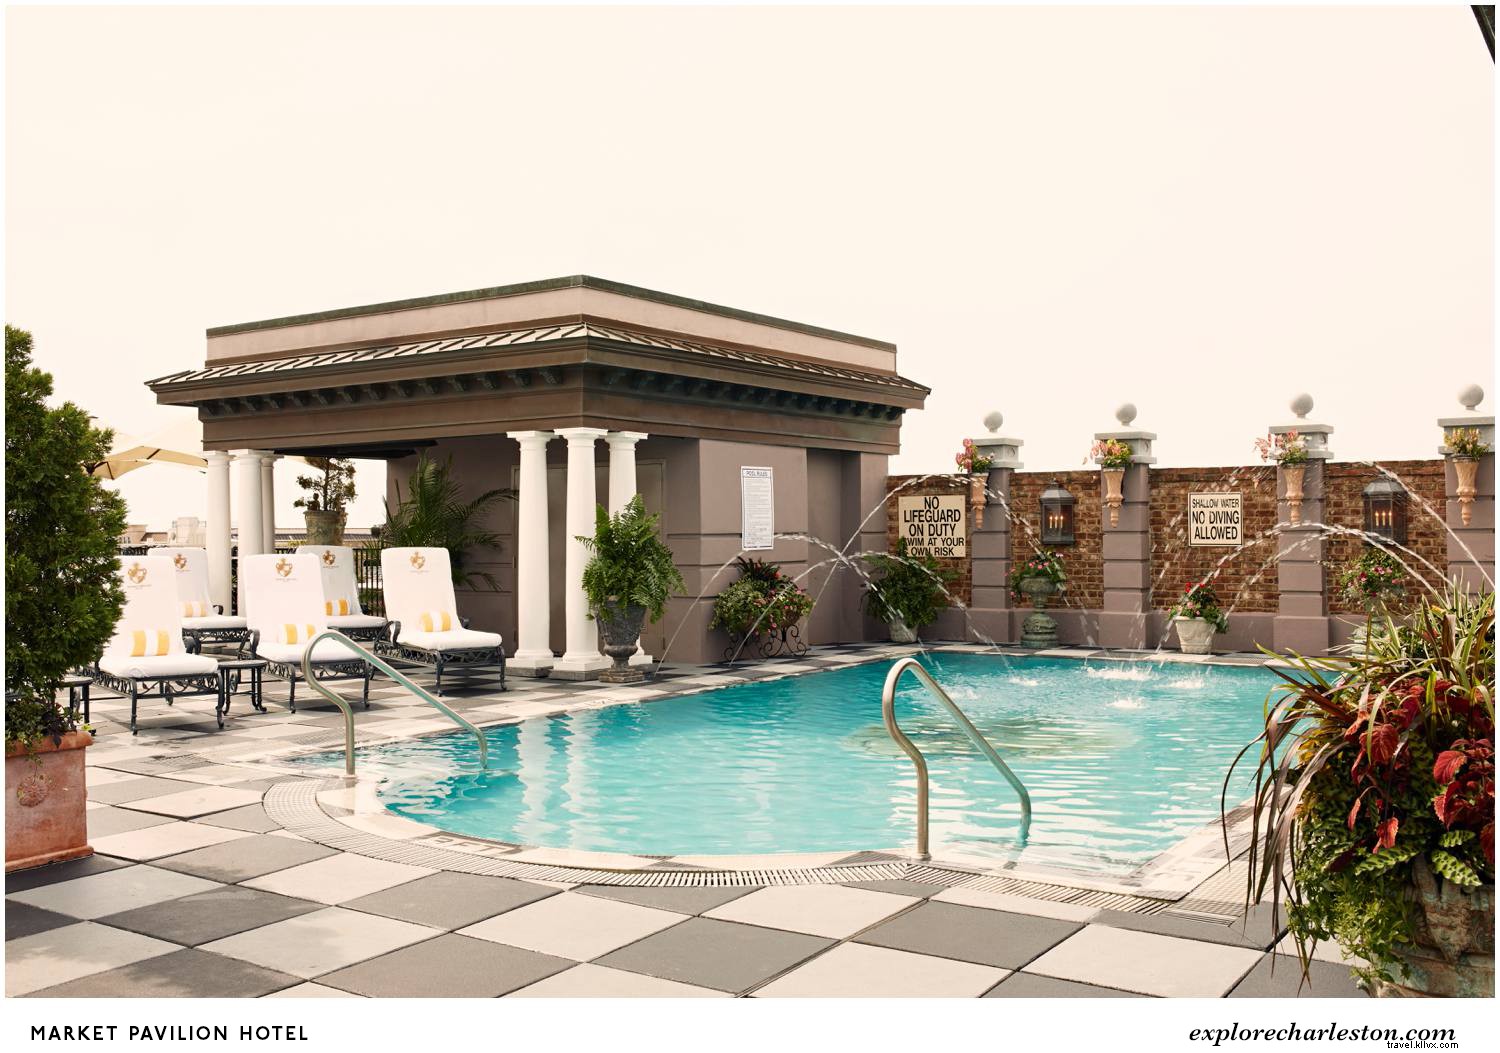 Top 12 des piscines cool de Charleston 